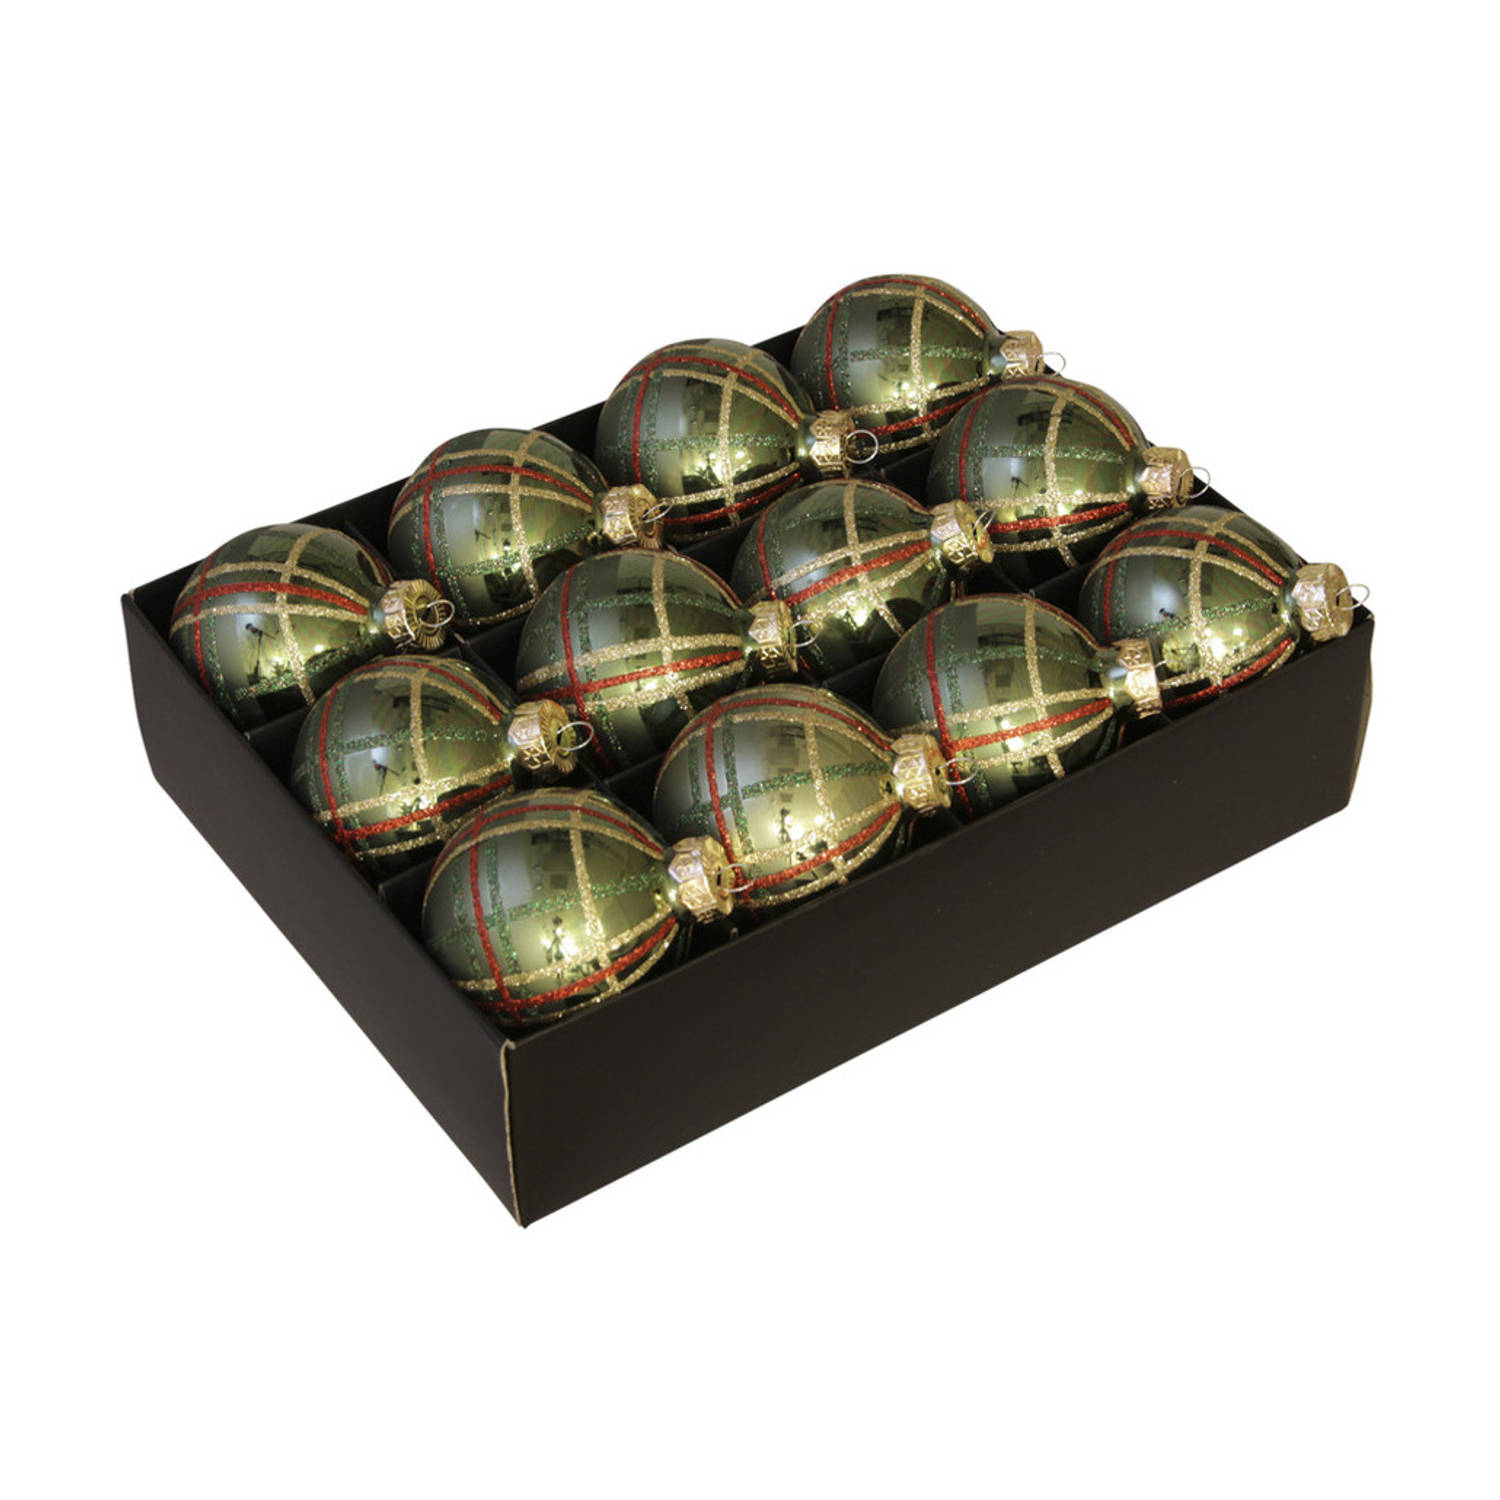 12x Stuks Luxe Glazen Gedecoreerde Kerstballen Groen Schotse Ruit 7,5 Cm Kerstbal